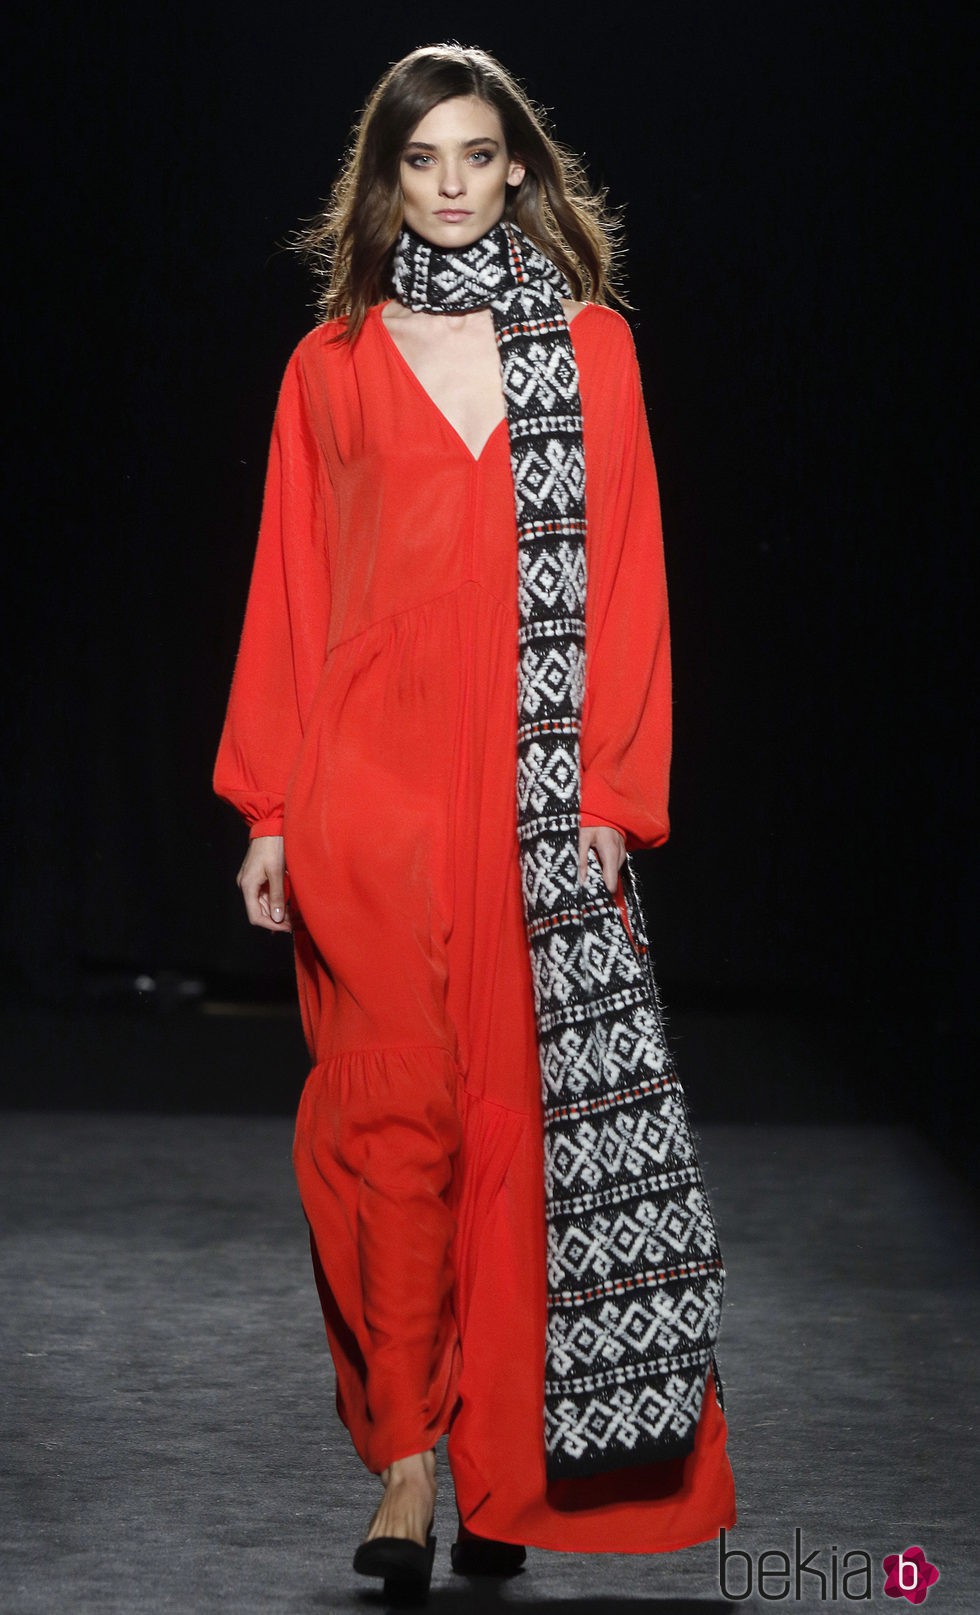 Vestido largo rojo de la colección otoño/invierno 2016/2017 de Sita Murt en 080 Barcelona Fashion